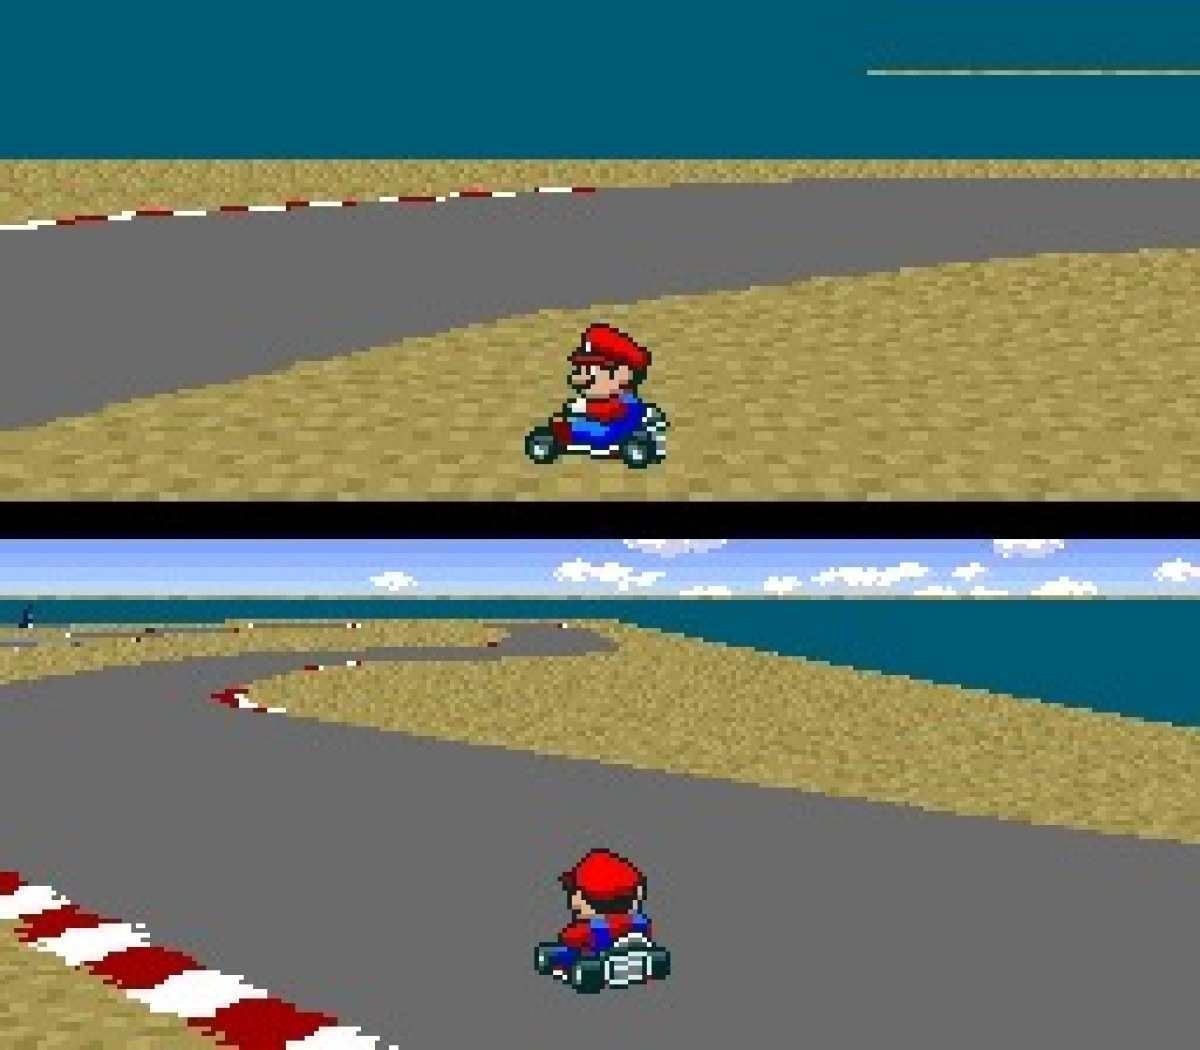 25 anos de Mario Kart 64, jogo sensação da geração 90